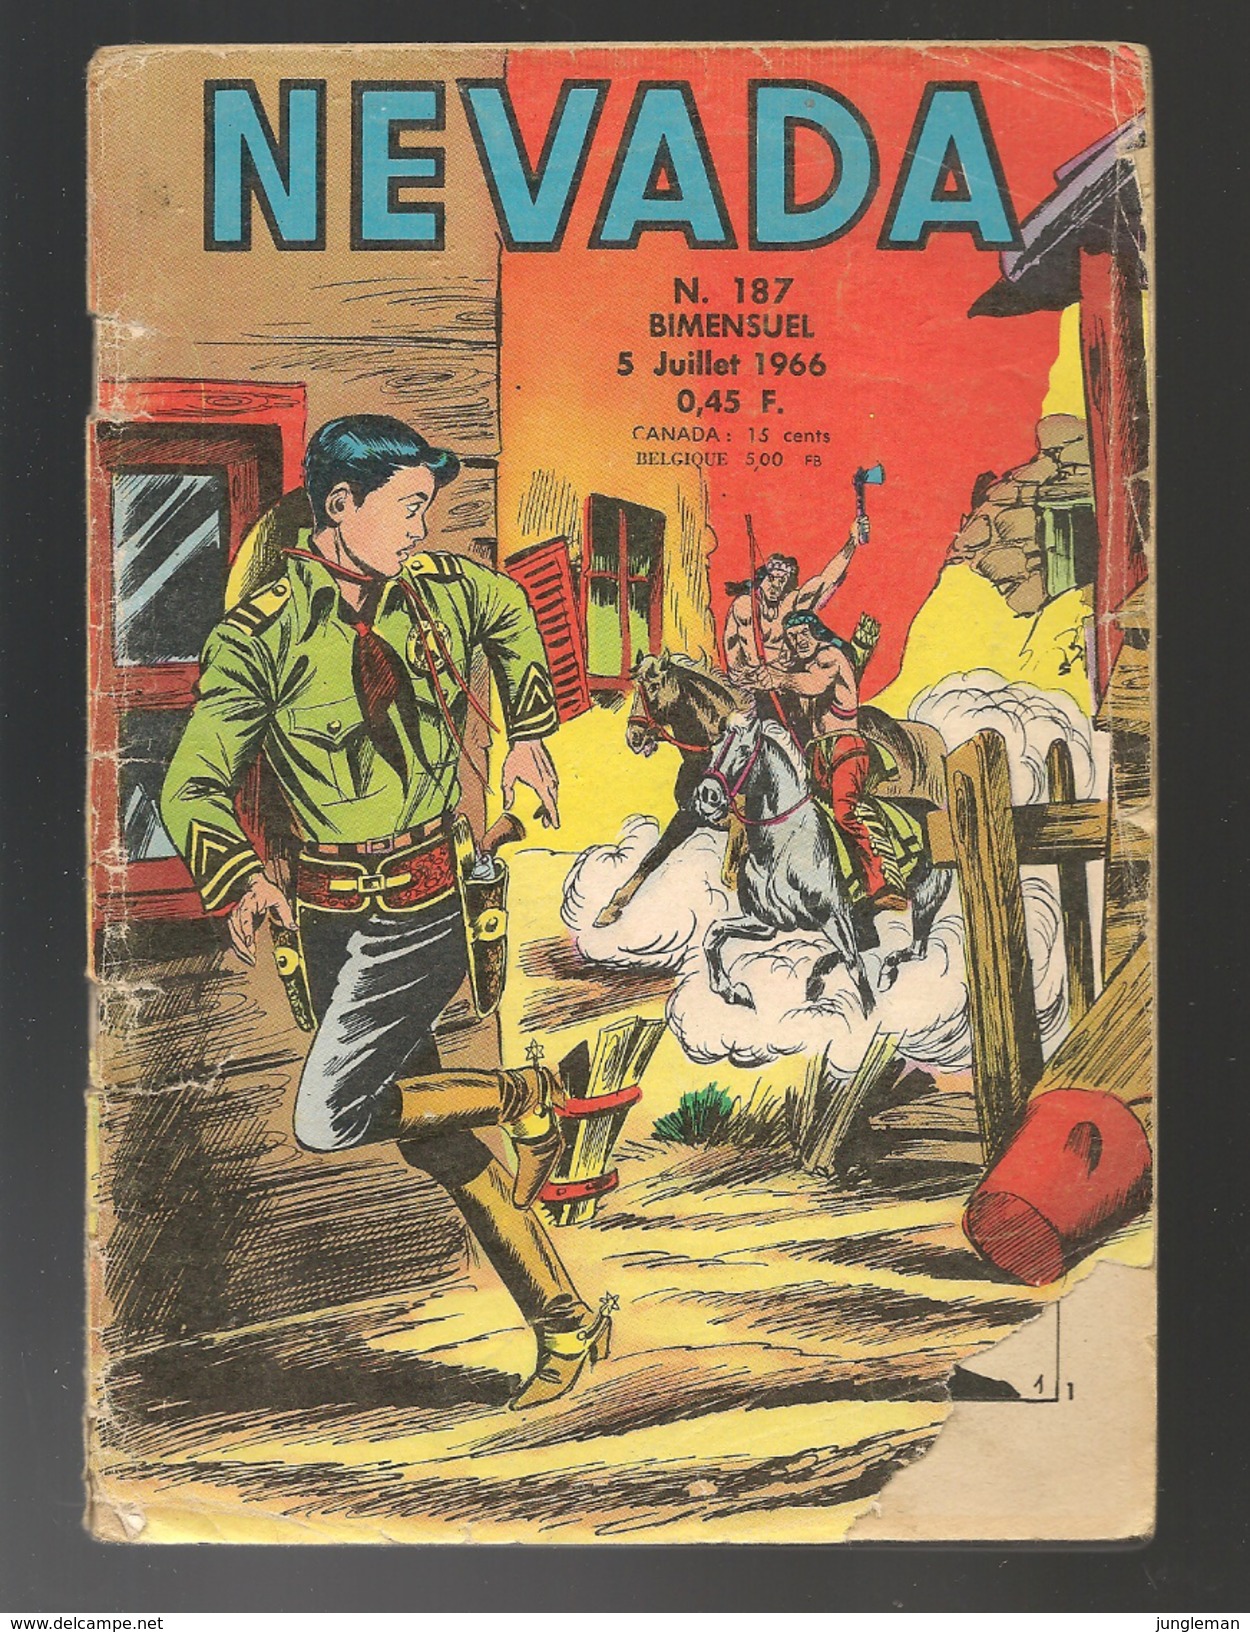 Nevada N° 187 - Editions LUG à Lyon - Juillet 1966 - Avec Miki Le Ranger Et Tamar Le Roi De La Jungle - BE - Nevada